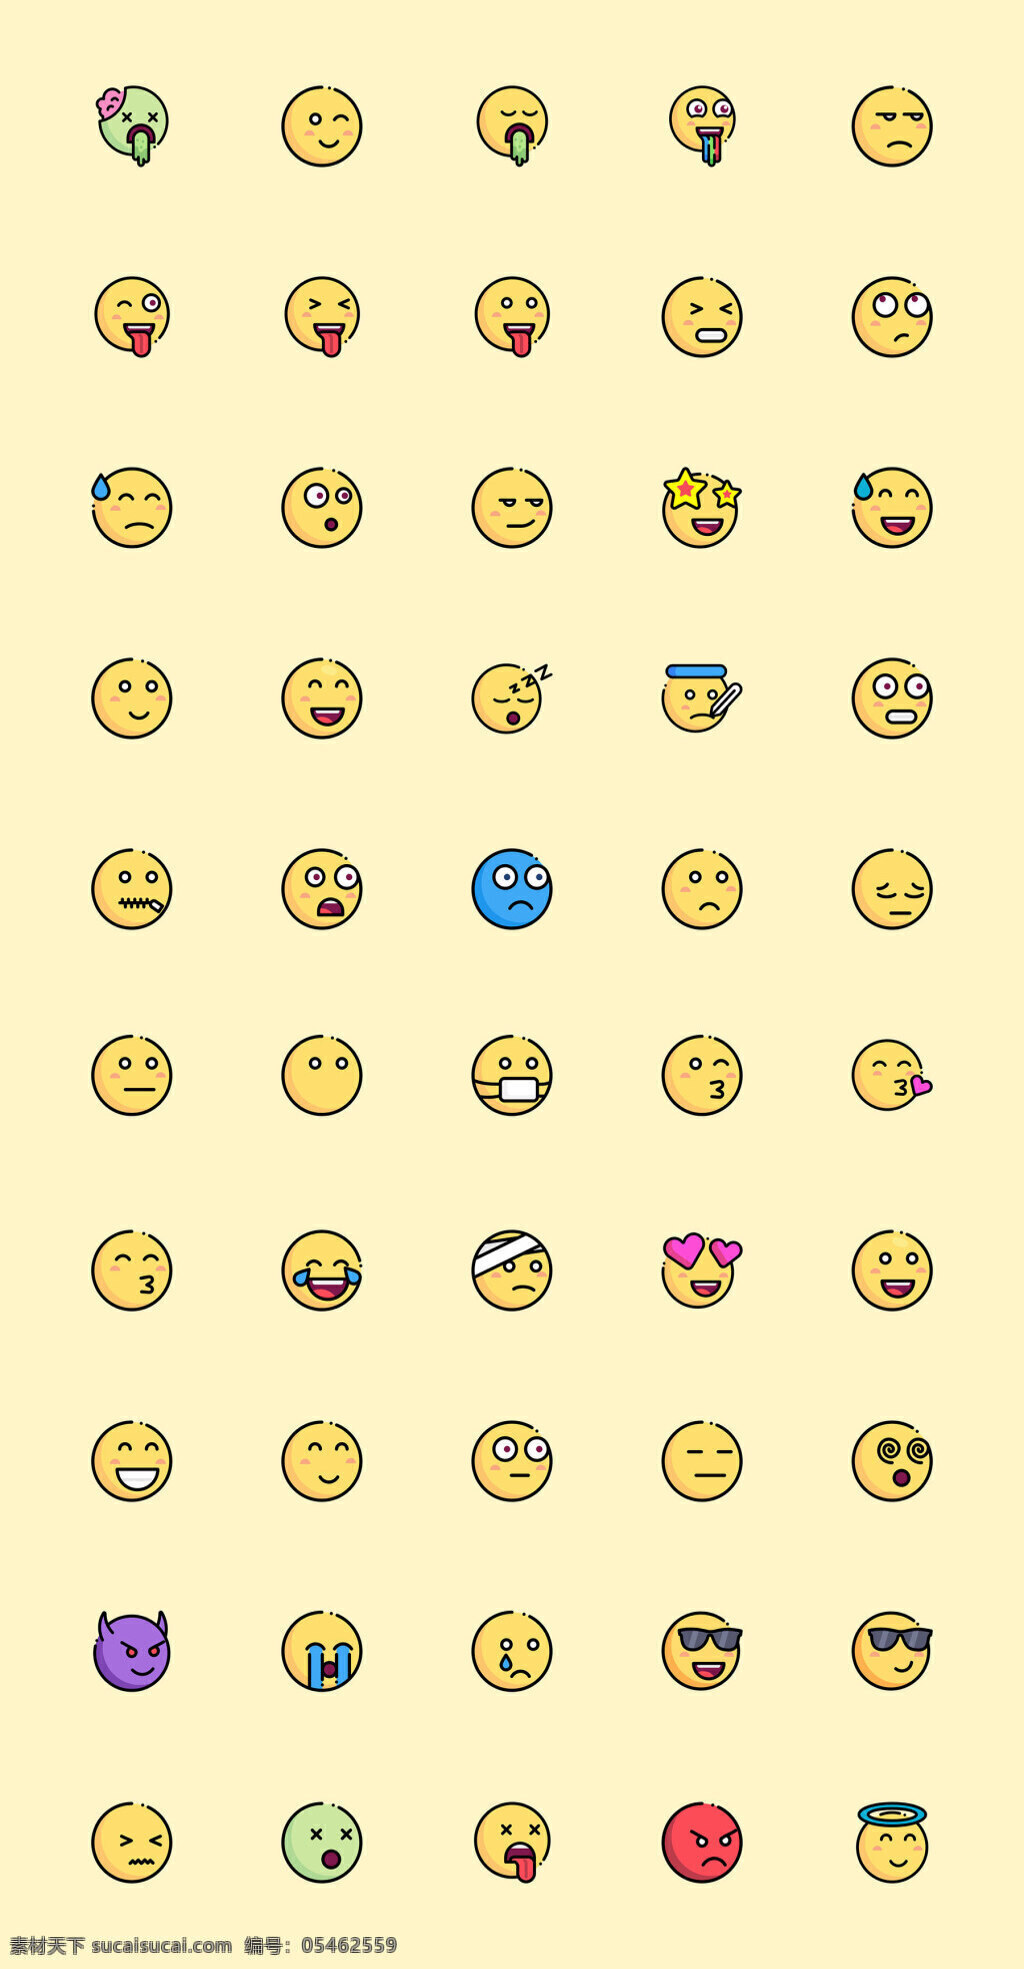 枚可爱 emoji 图标 黄色 麦克风 面具 摄像机 矢量素材 光盘 照片 底片 标志图标 矢量素